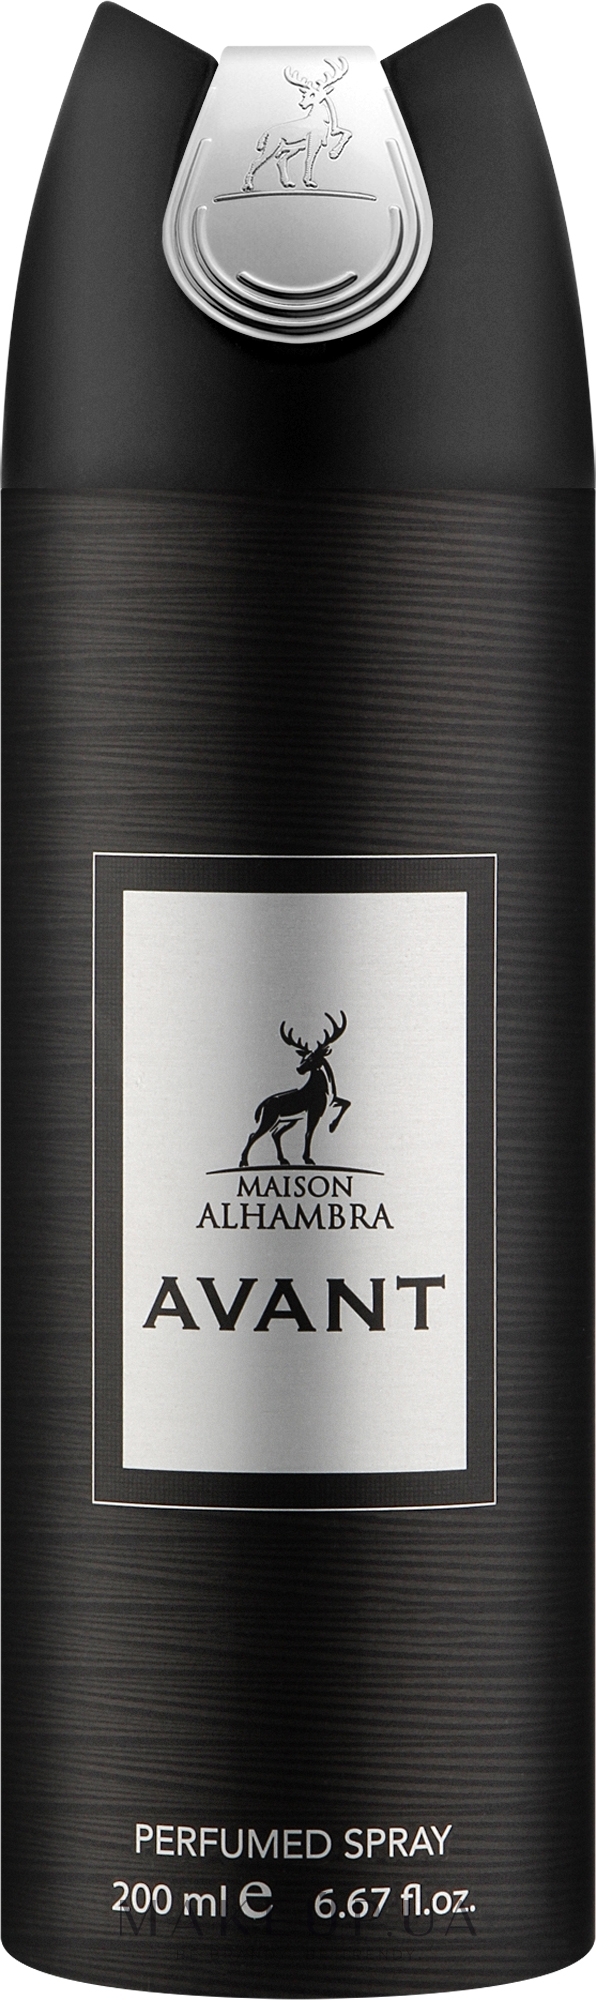 Alhambra Avant - Парфумований дезодорант-спрей — фото 200ml